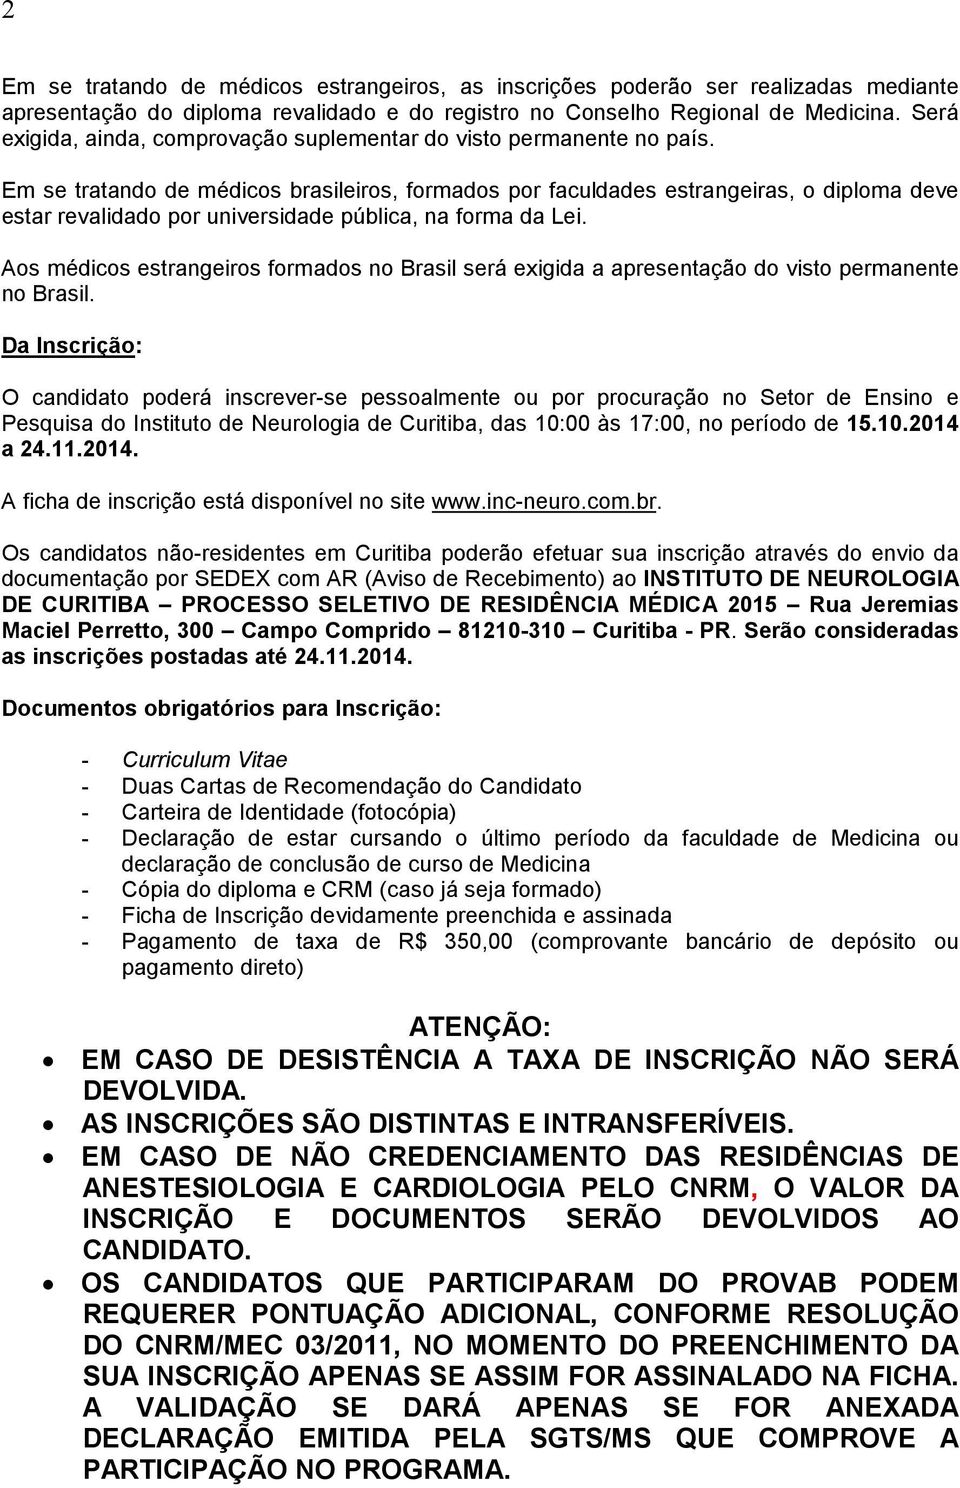 Em se tratando de médicos brasileiros, formados por faculdades estrangeiras, o diploma deve estar revalidado por universidade pública, na forma da Lei.